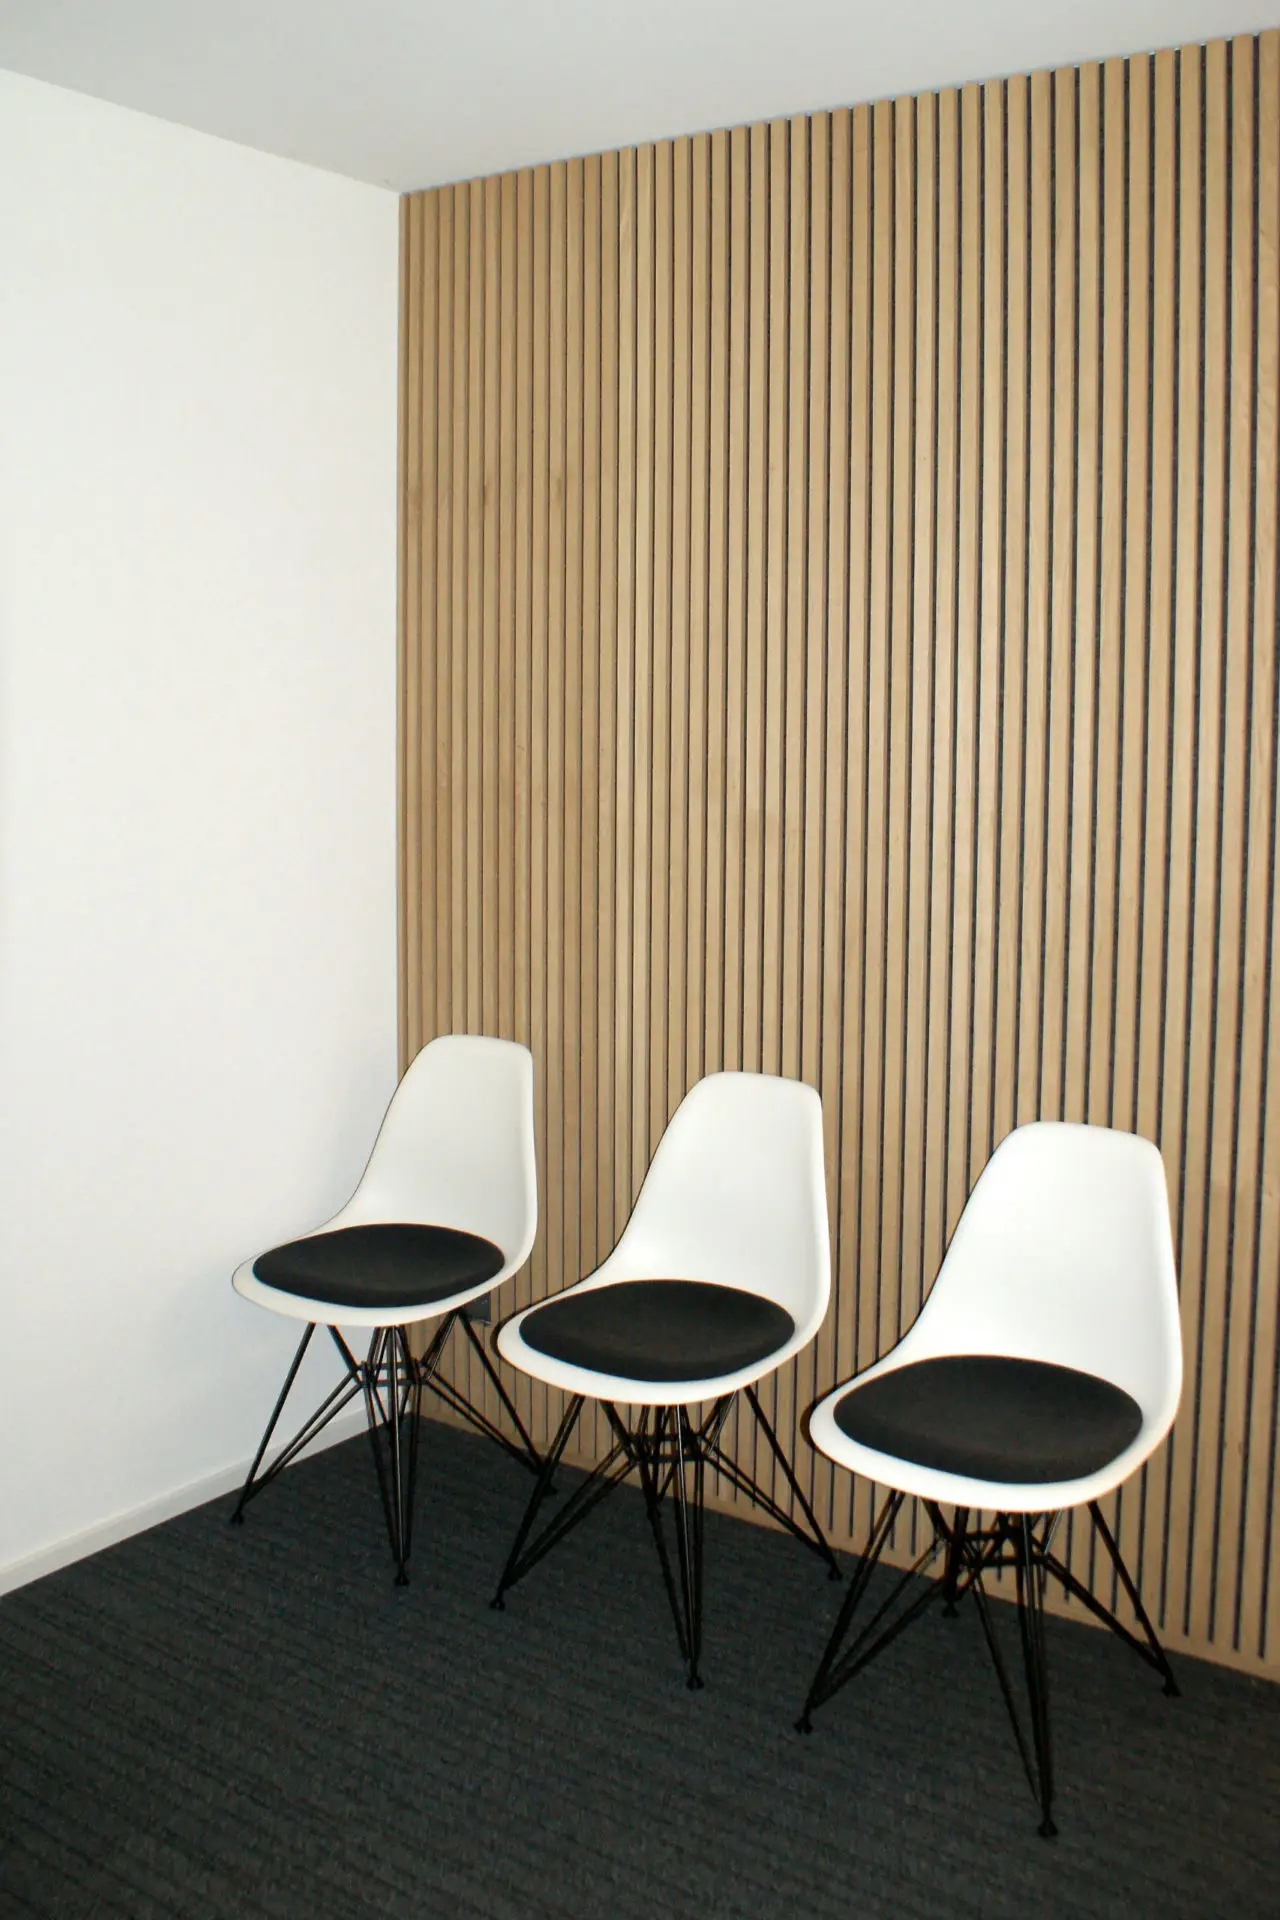 3 chaises devant un revêtement acoustique avec une apparence de lattes de bois.